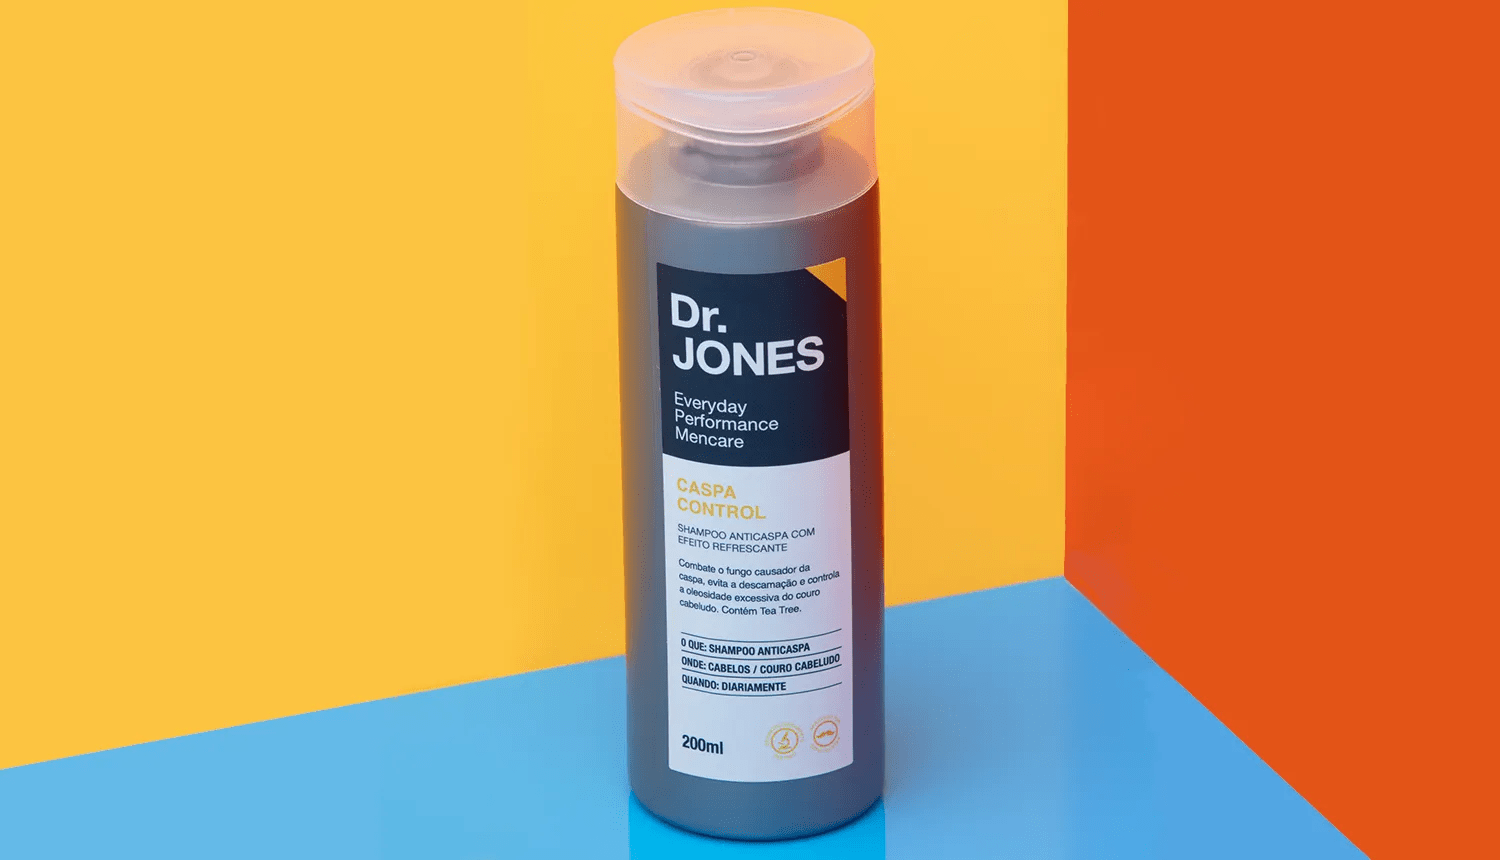 Por dentro do produto: Climbazol - Dr. JONES. Em fundo geométrico azul-claro, laranja e dourado, foto em destaque da embalagem do shampoo anticaspa Caspa Control, da Dr. JONES.